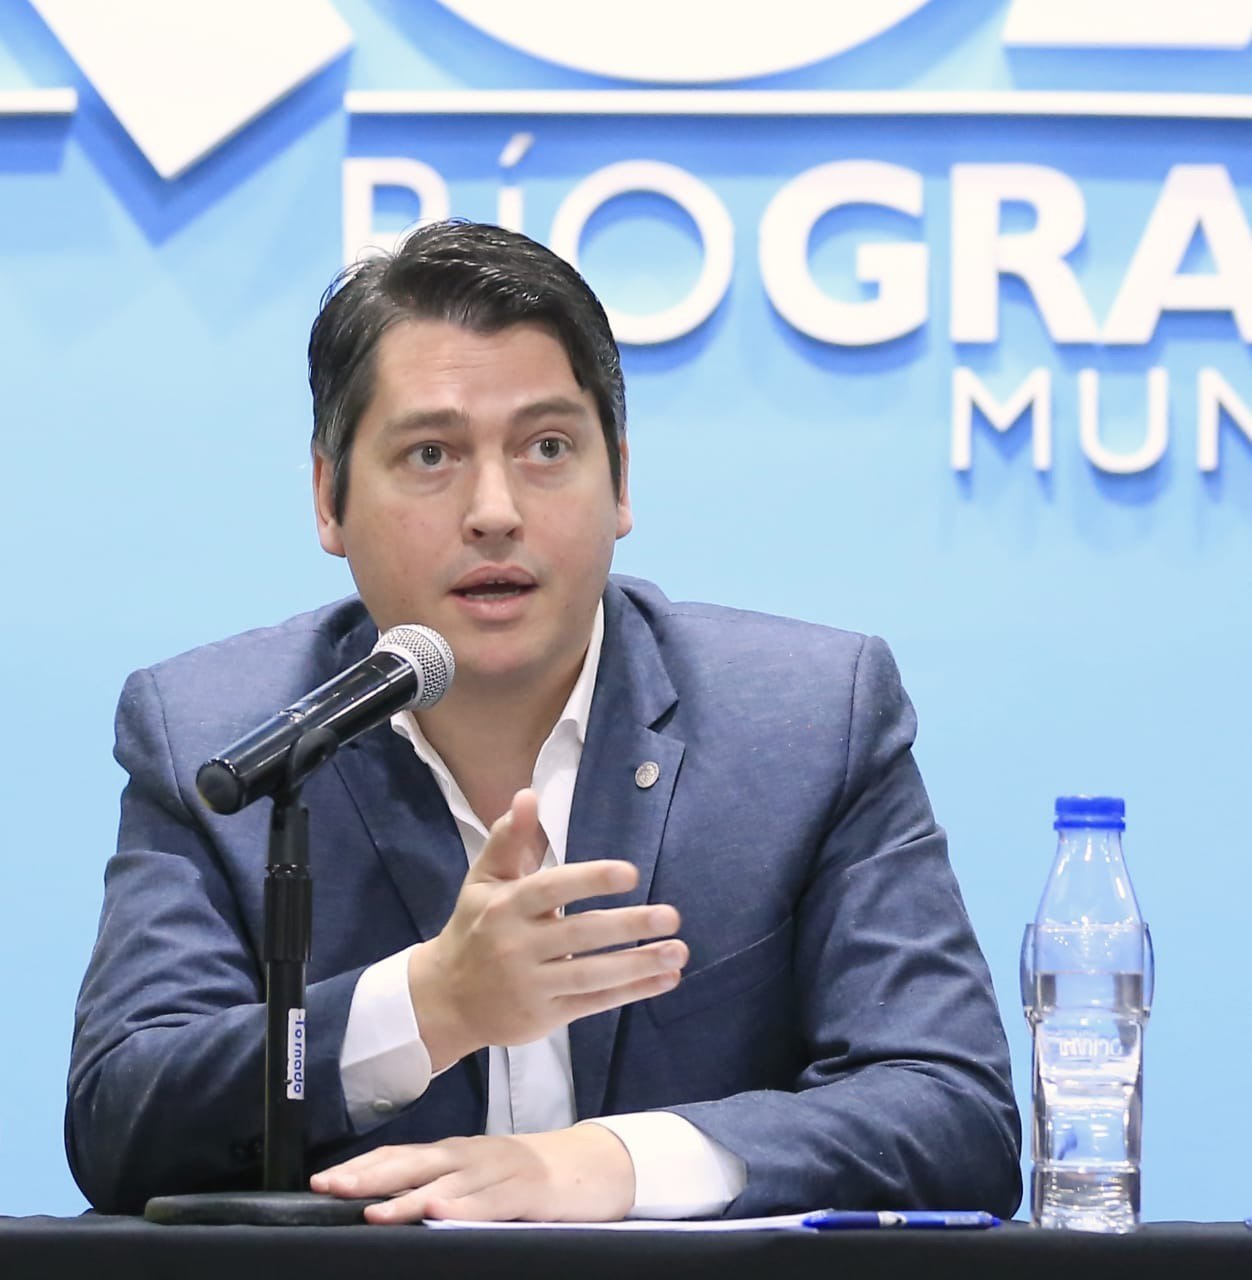 El Municipio de Río Graande implementa un nuevo sistema de control de precios